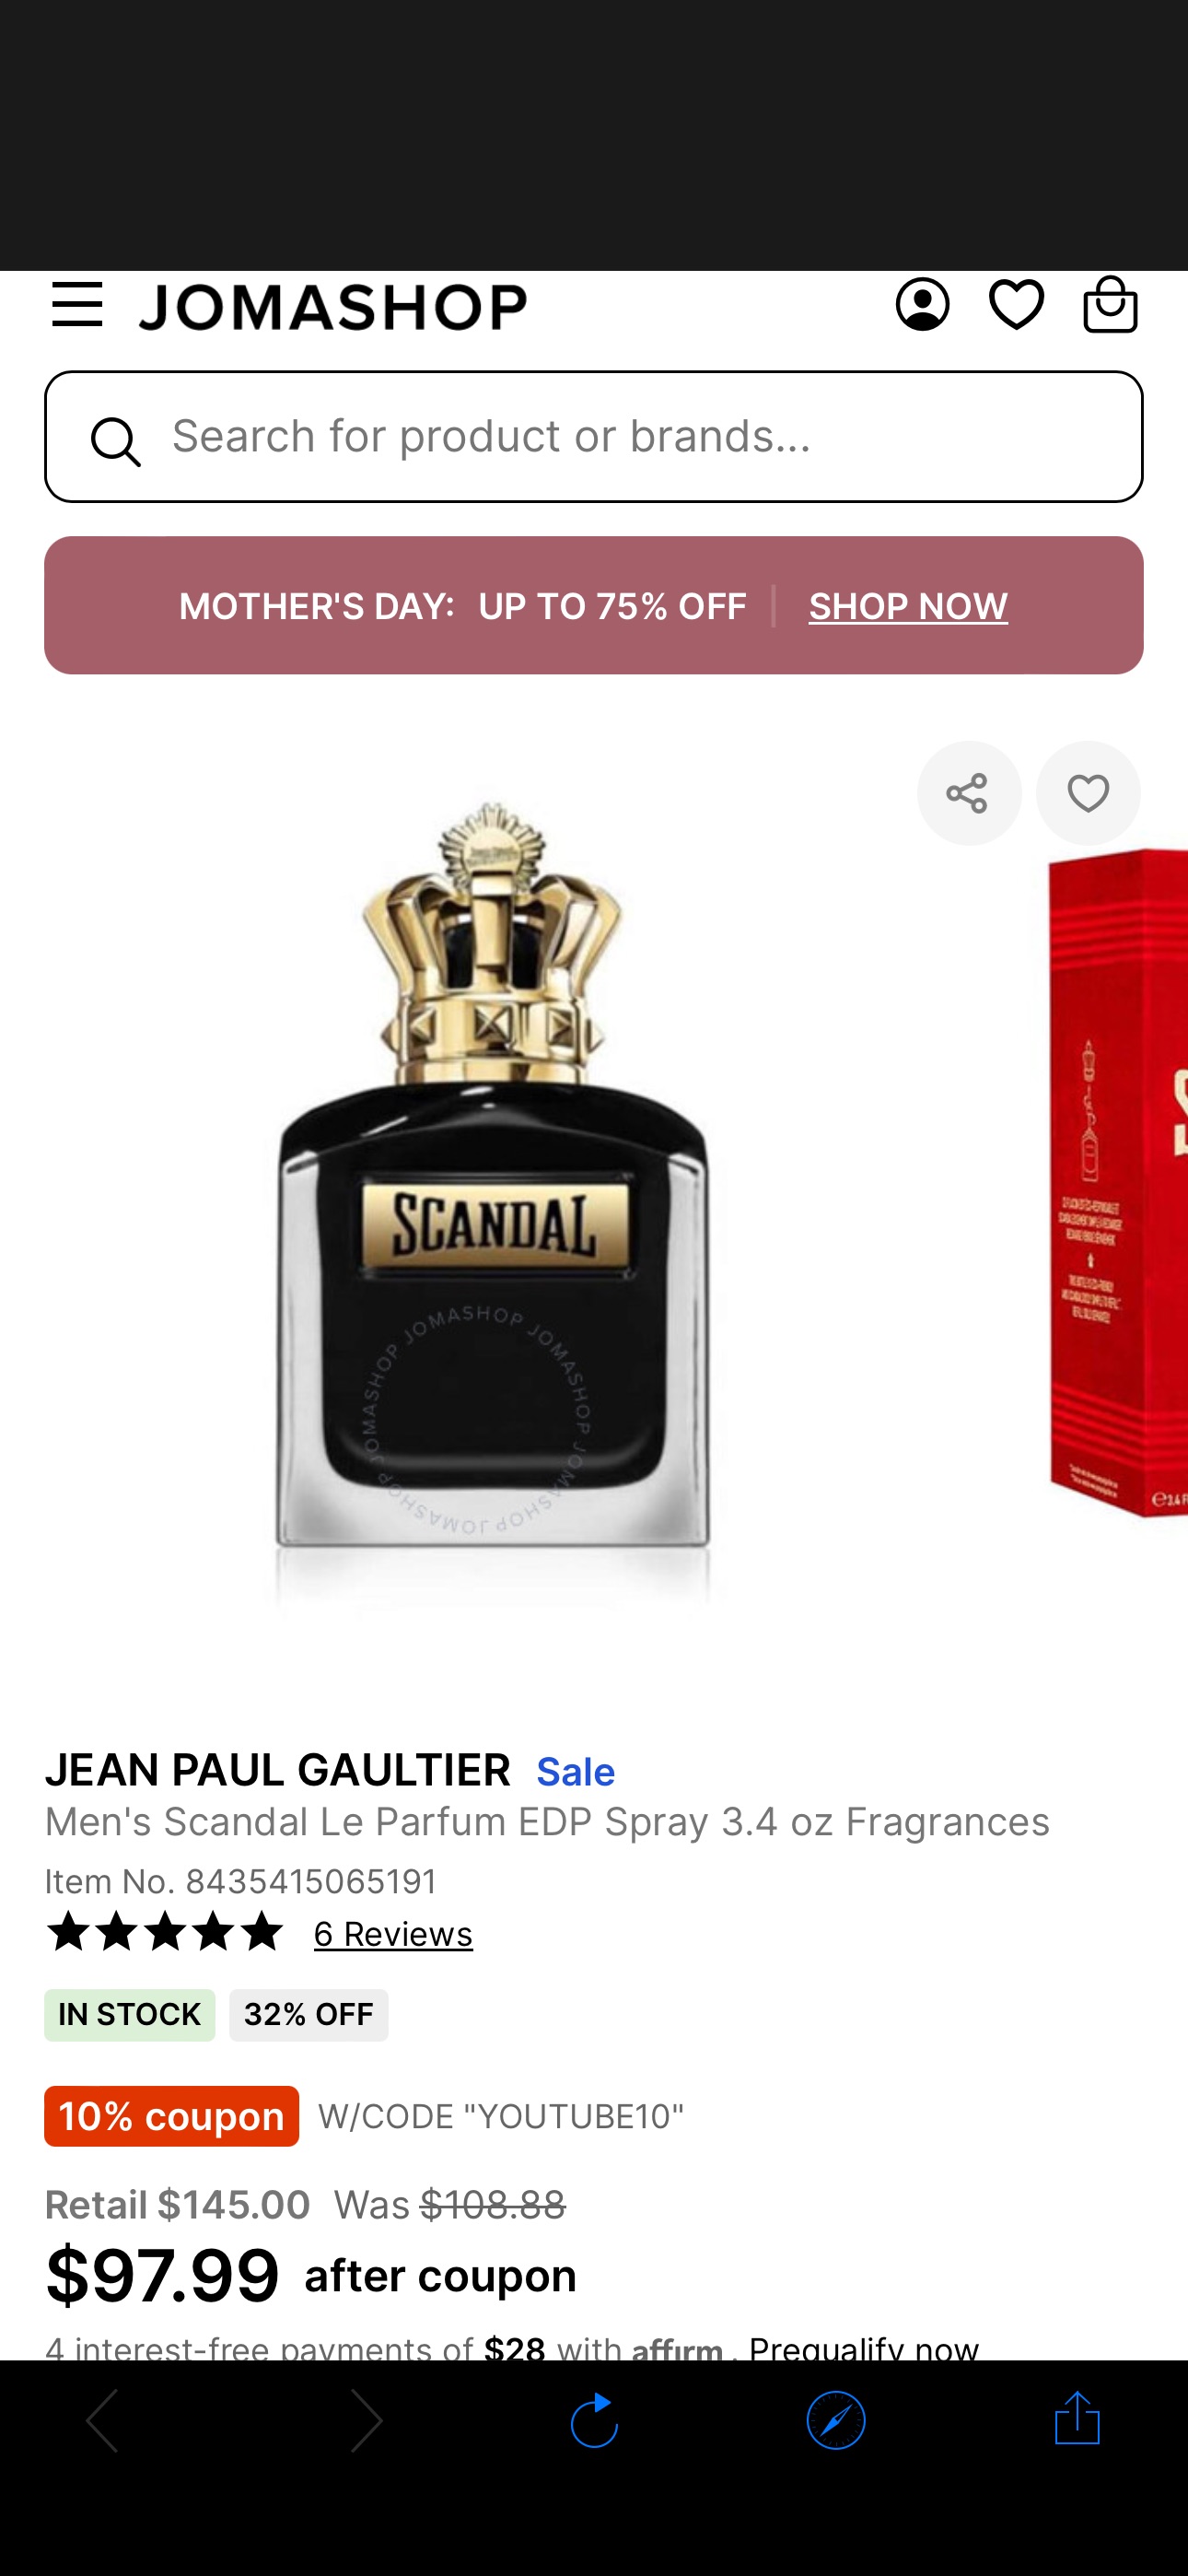 Jean Paul Gaultier Men's Scandal Le Parfum EDP Spray 3.4 oz Fragrances 8435415065191 - Fragrances & Beauty, Scandal Le Parfum - Jomashop